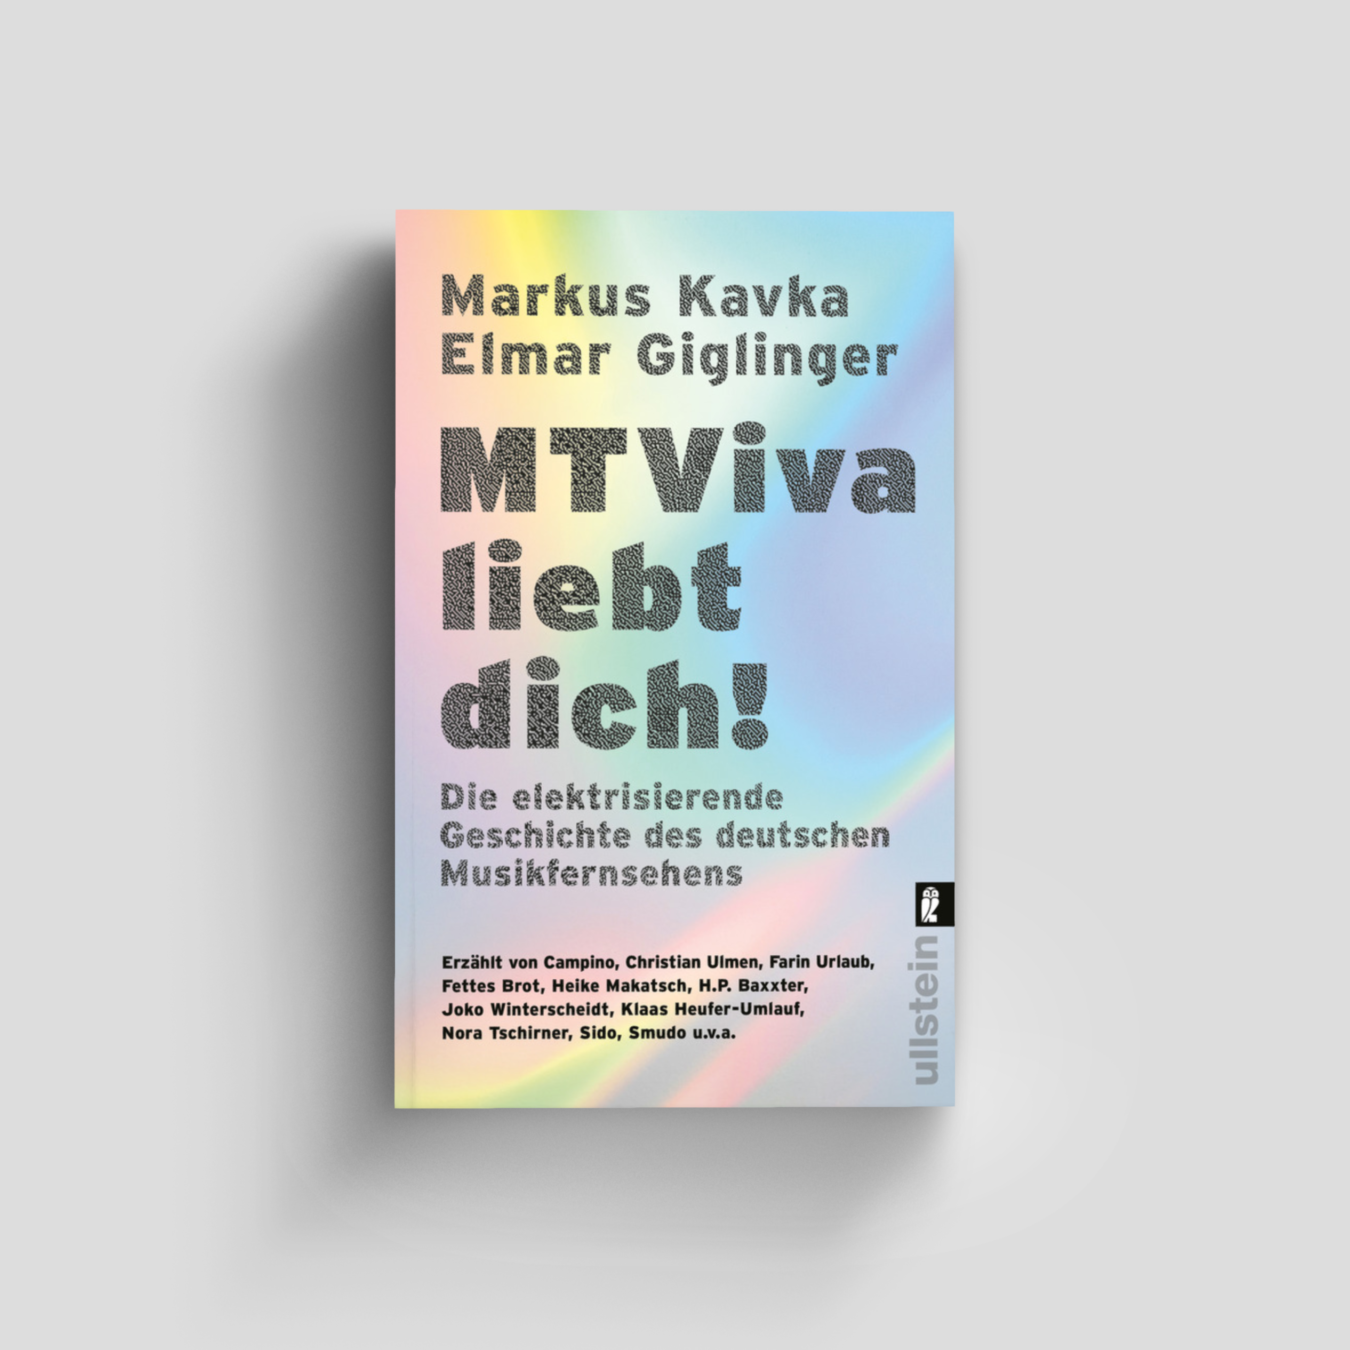 Buchcover von MTViva liebt dich!